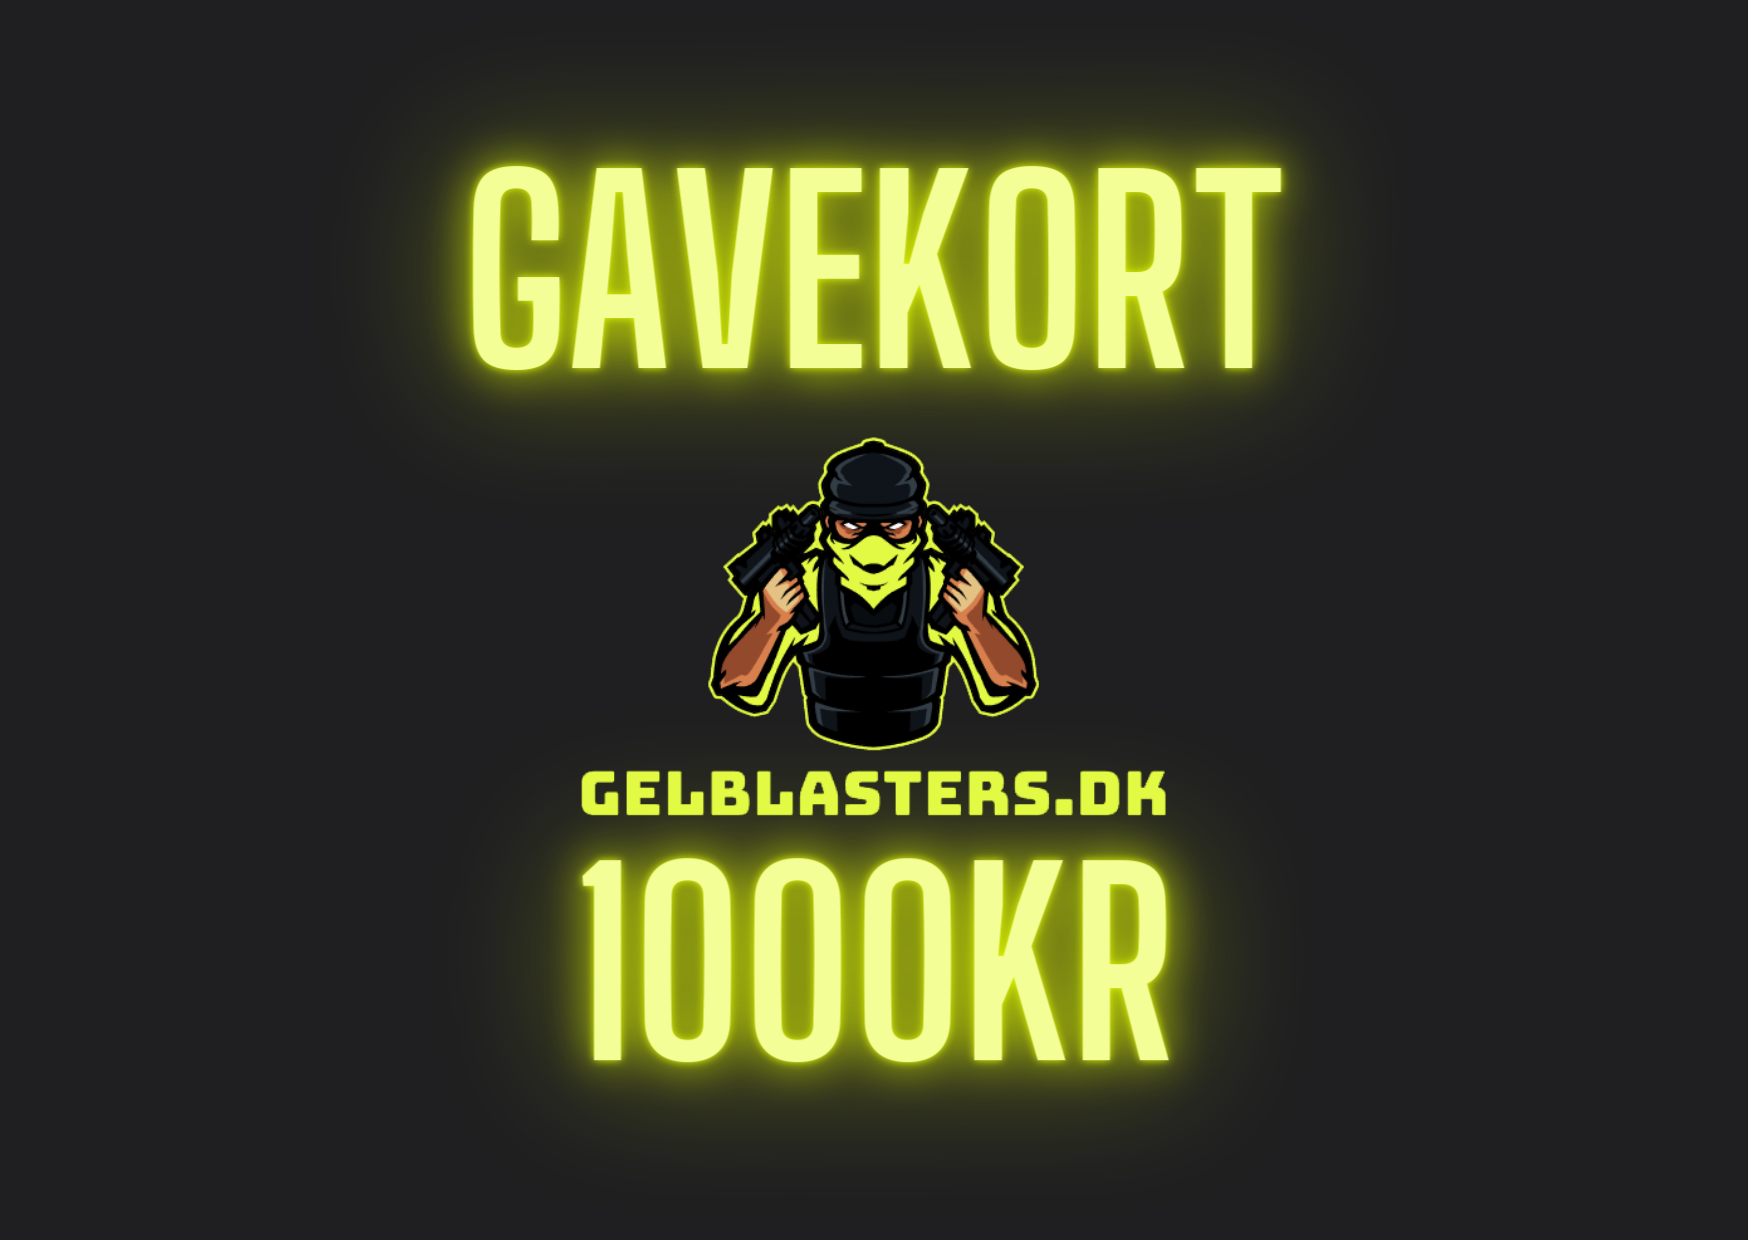 Gel Blaster Gavekort Gelblasters.dk